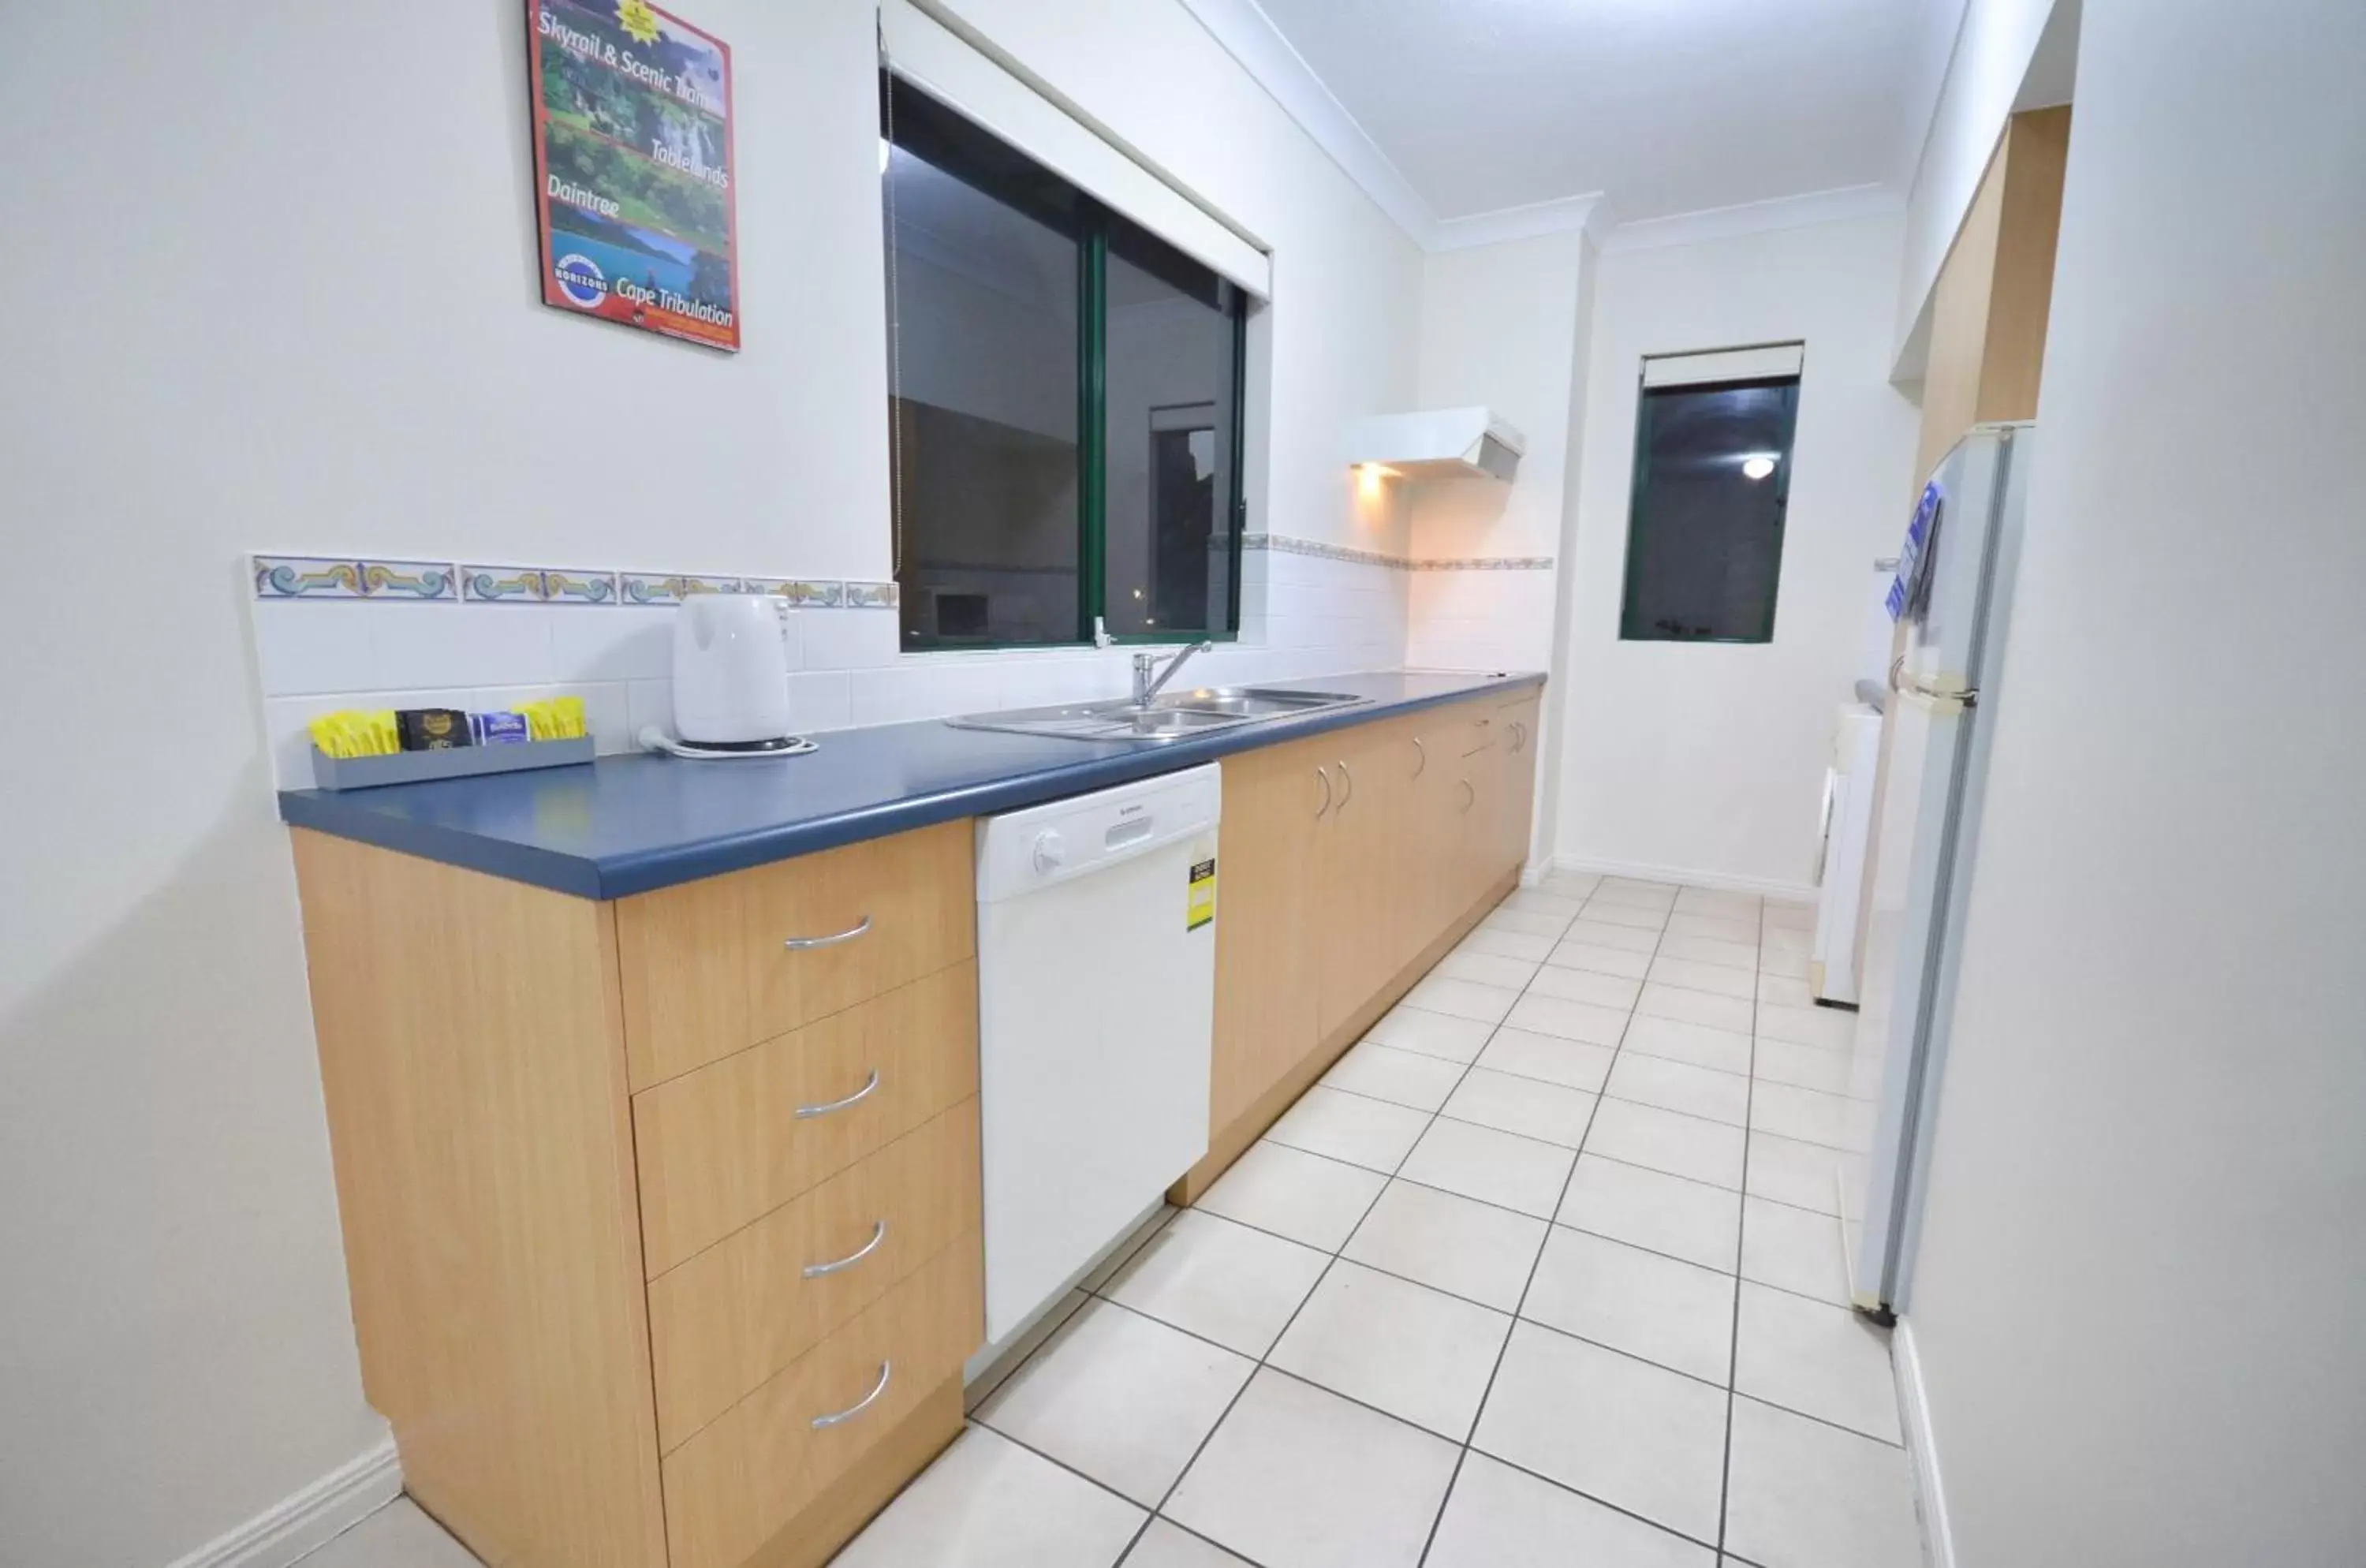 Kitchen or kitchenette, Kitchen/Kitchenette in Grosvenor in Cairns